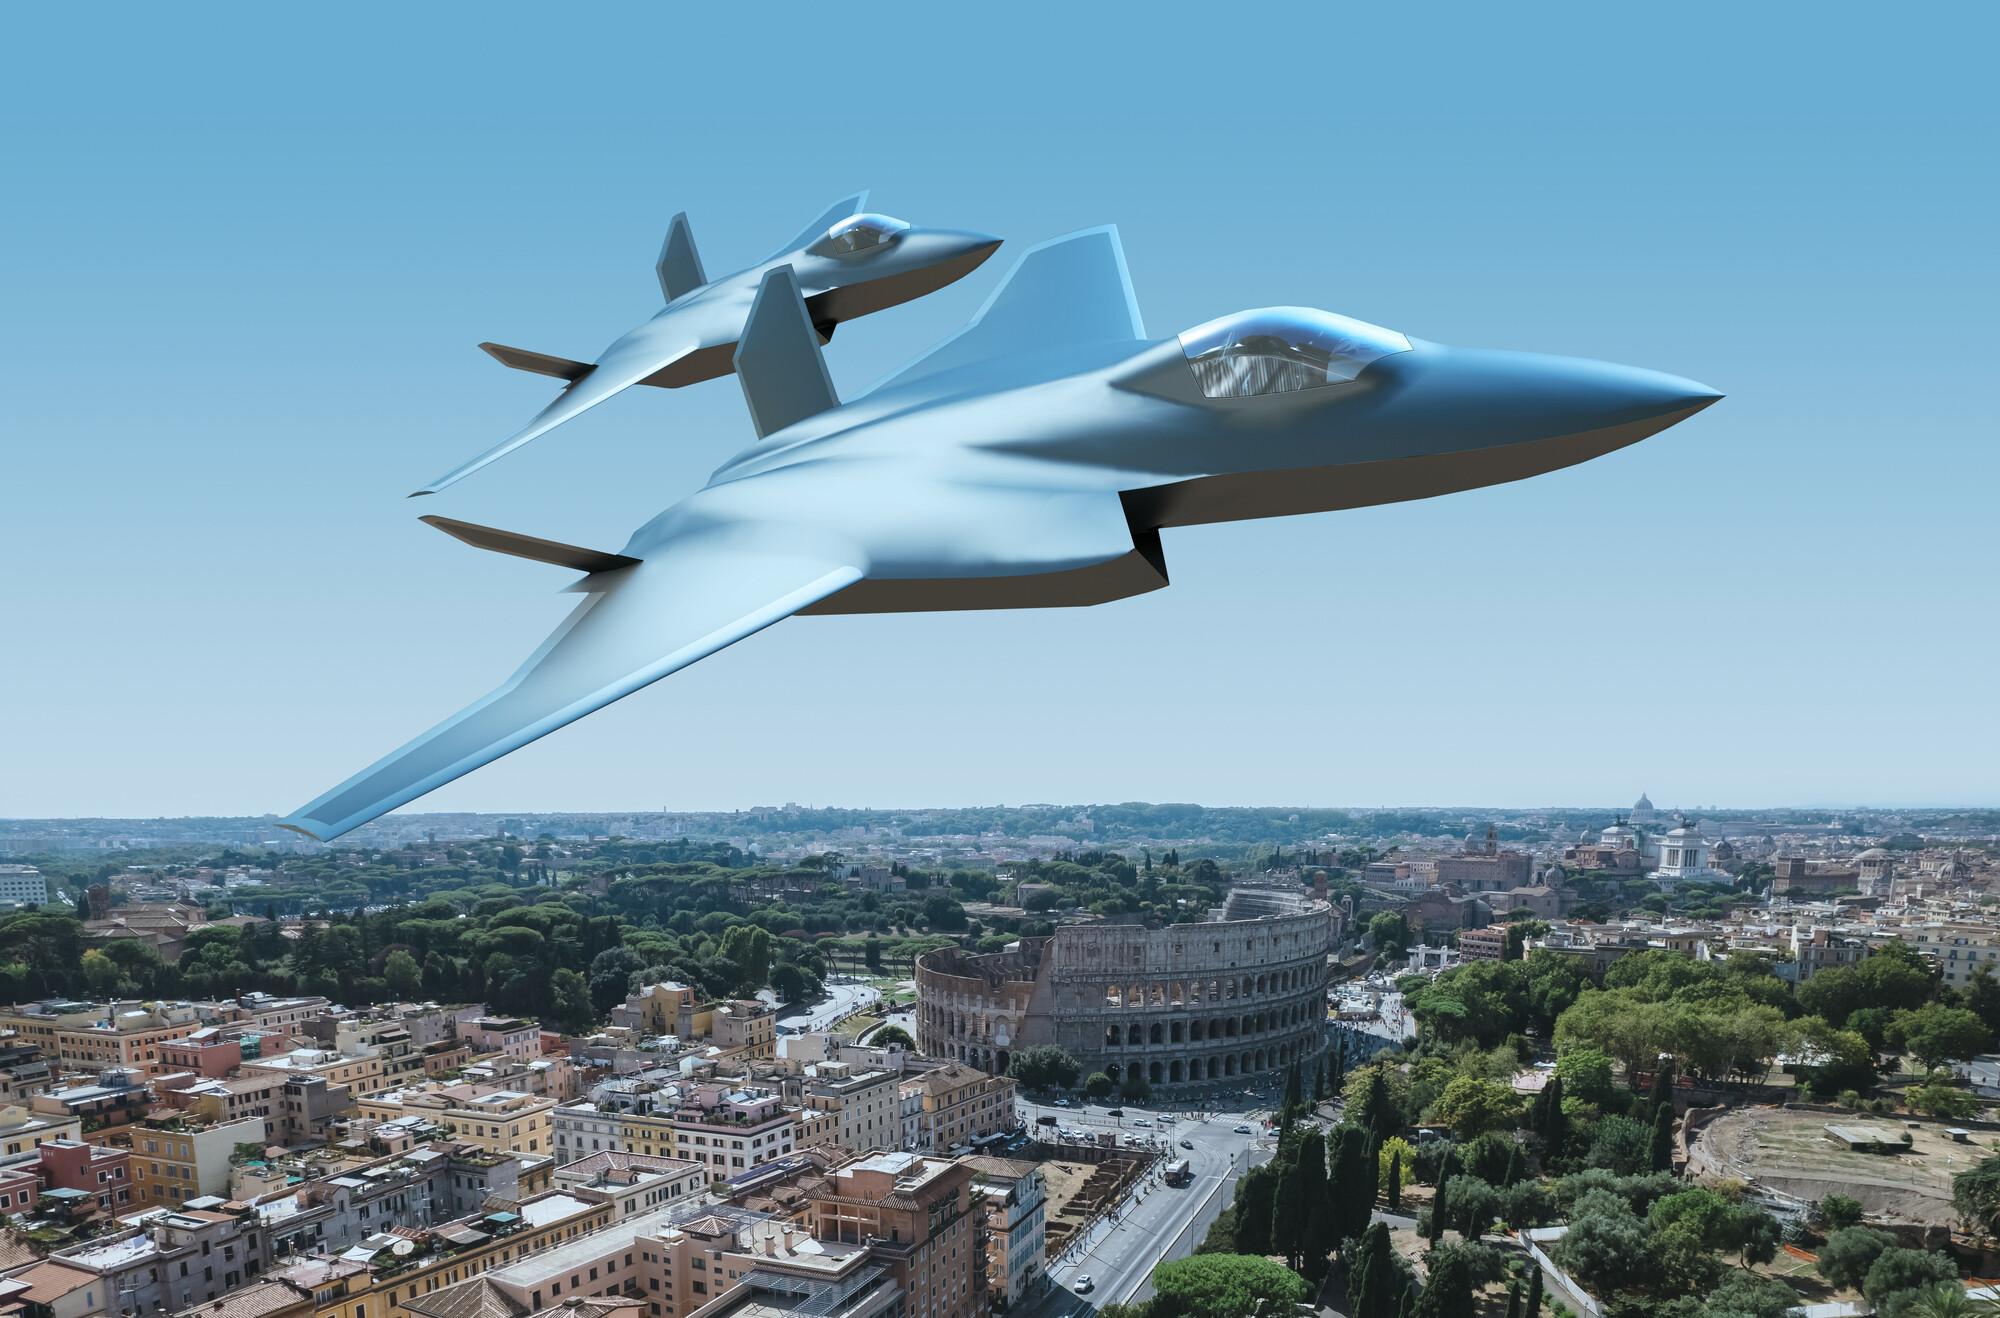 Italien vil investere mere end 8 mia. dollars inden 2037 for at udvikle et sjettegenerations kampfly sammen med Storbritannien og Japan.